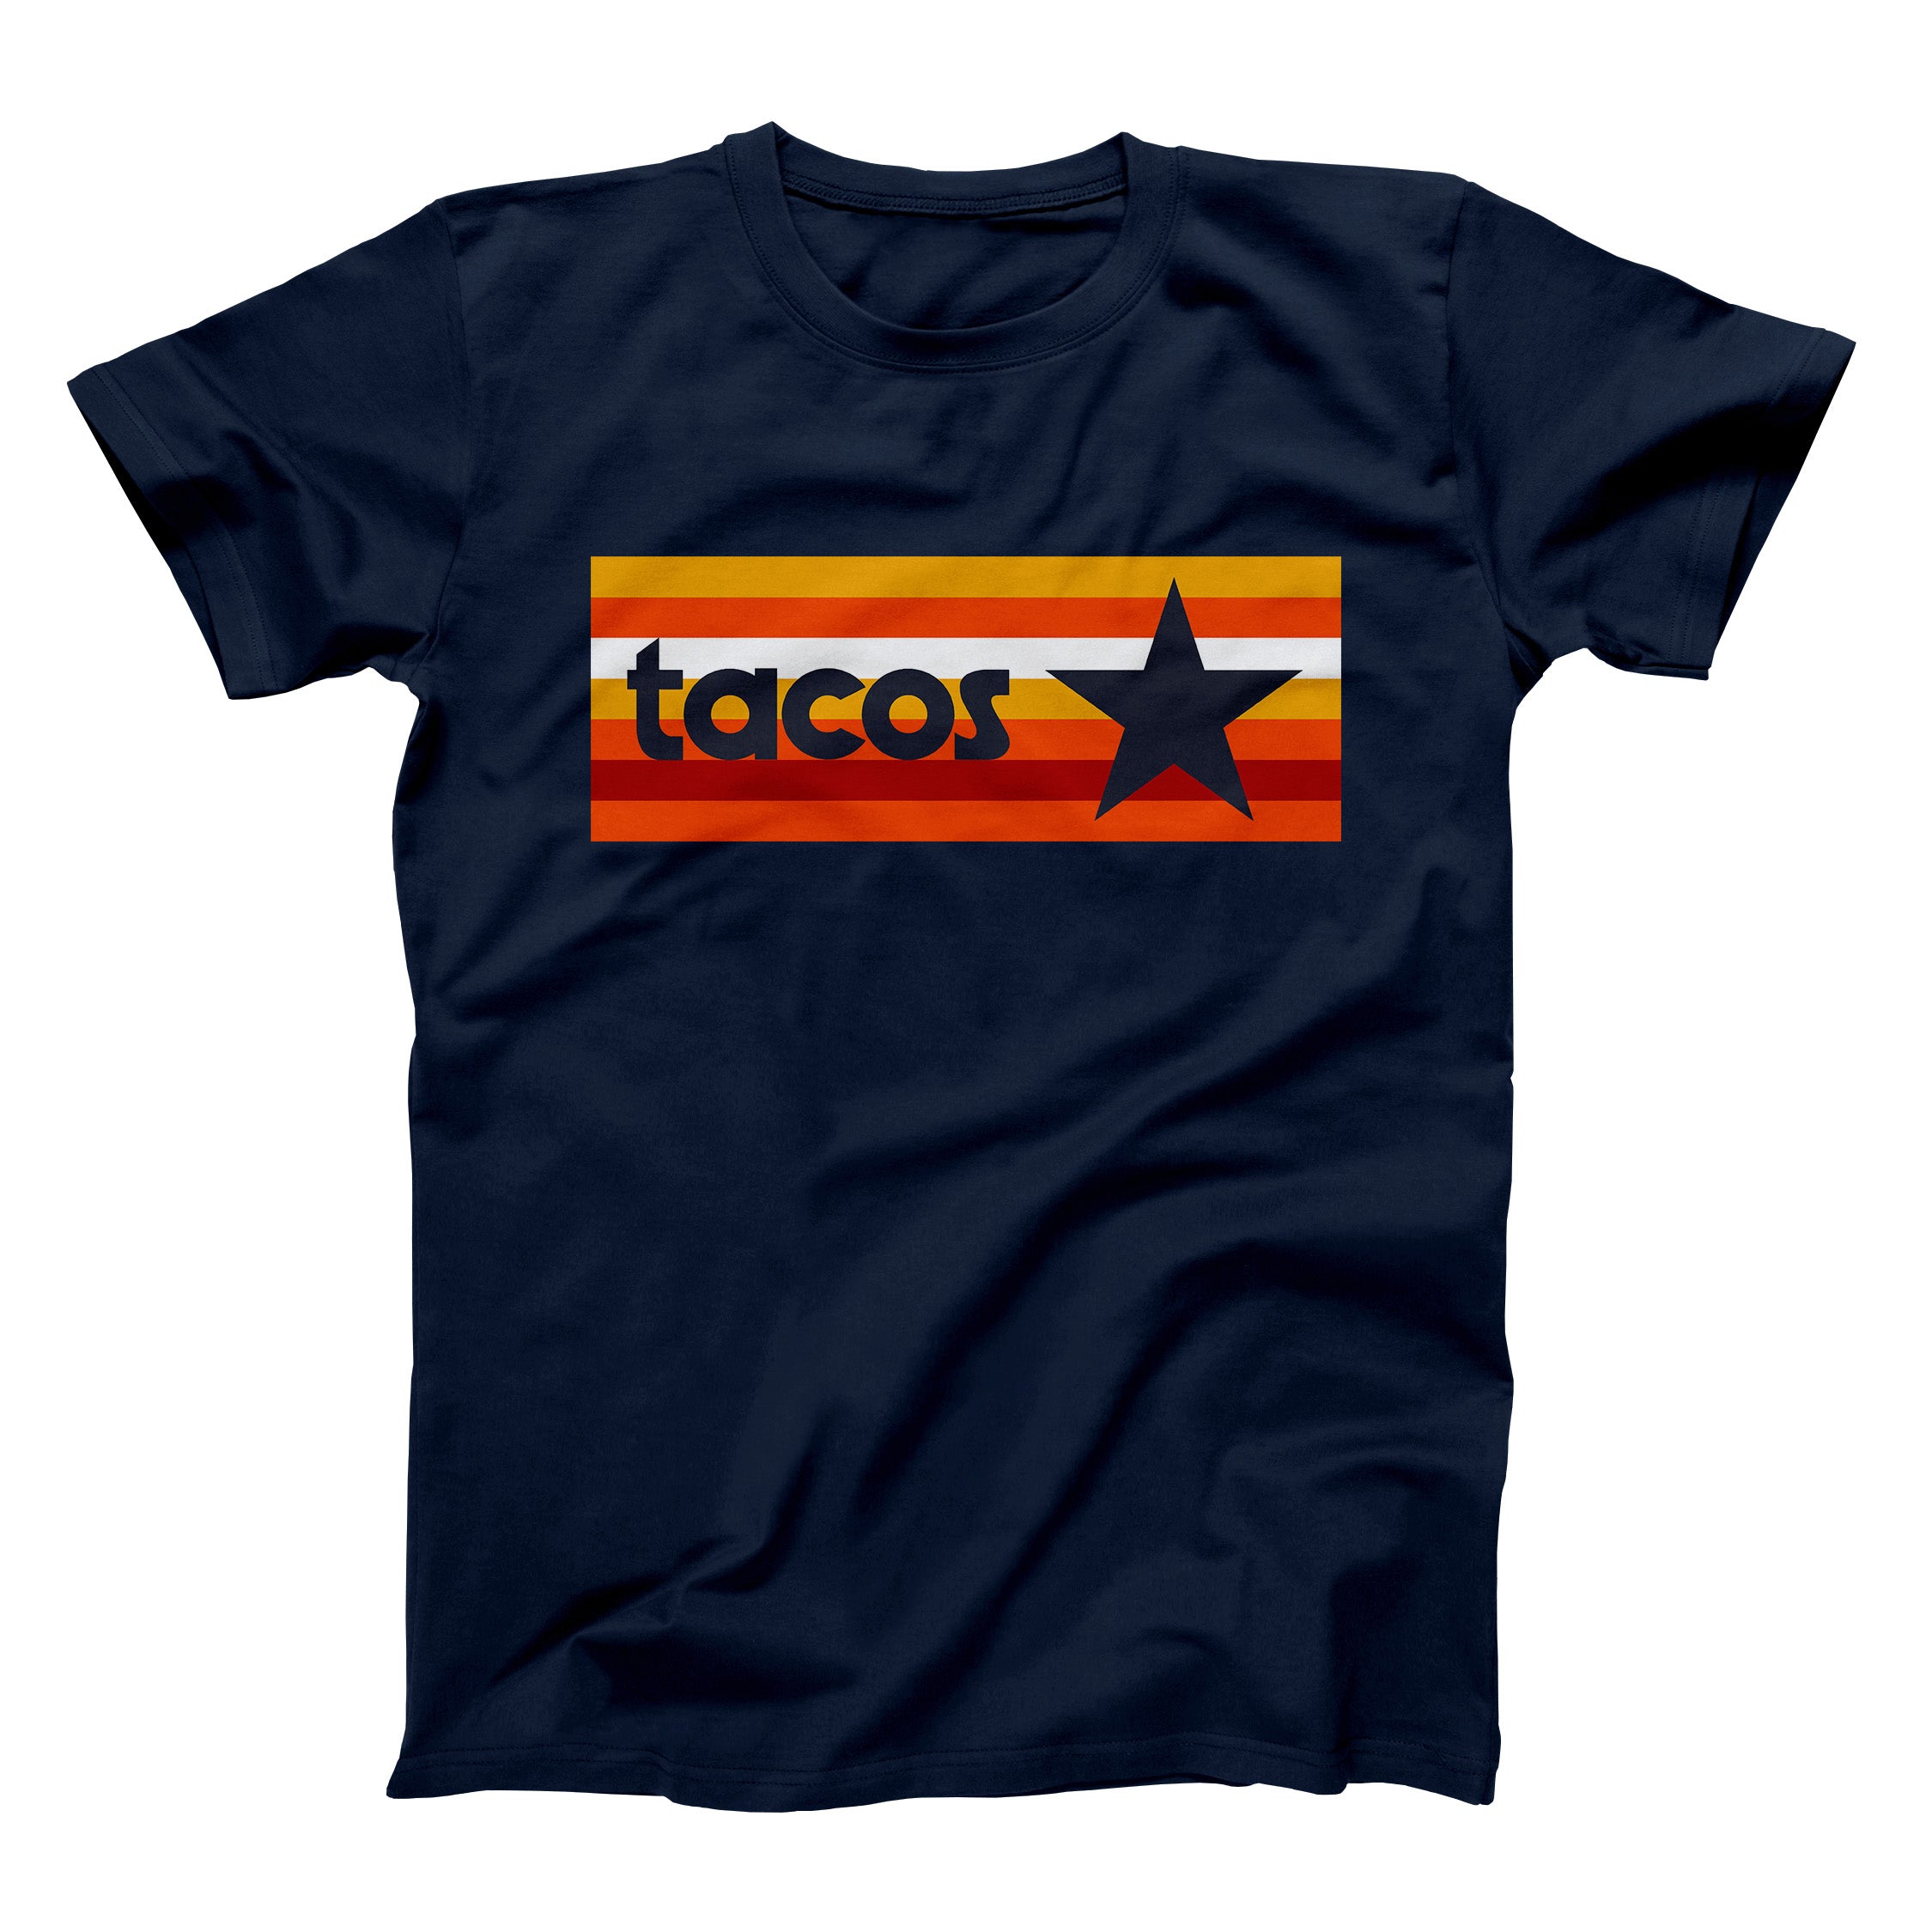 Astros Shirt 